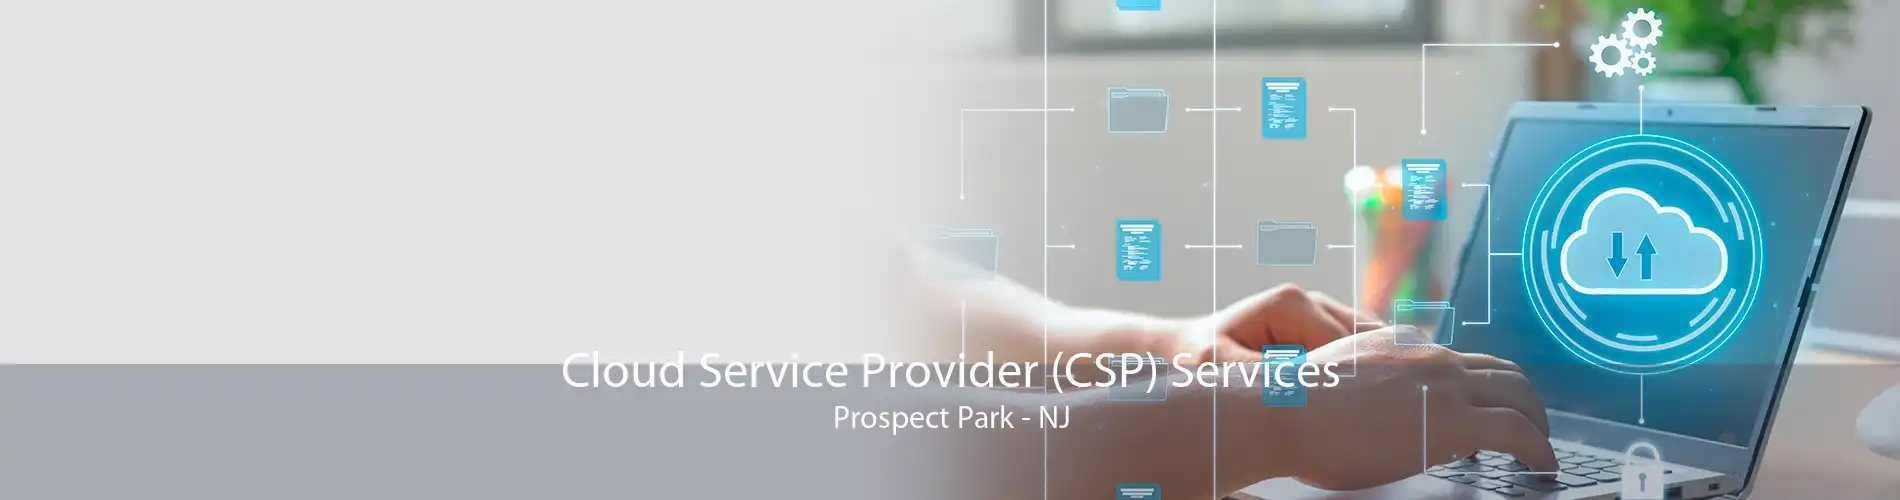 Cloud Service Provider (CSP) Services Prospect Park - NJ